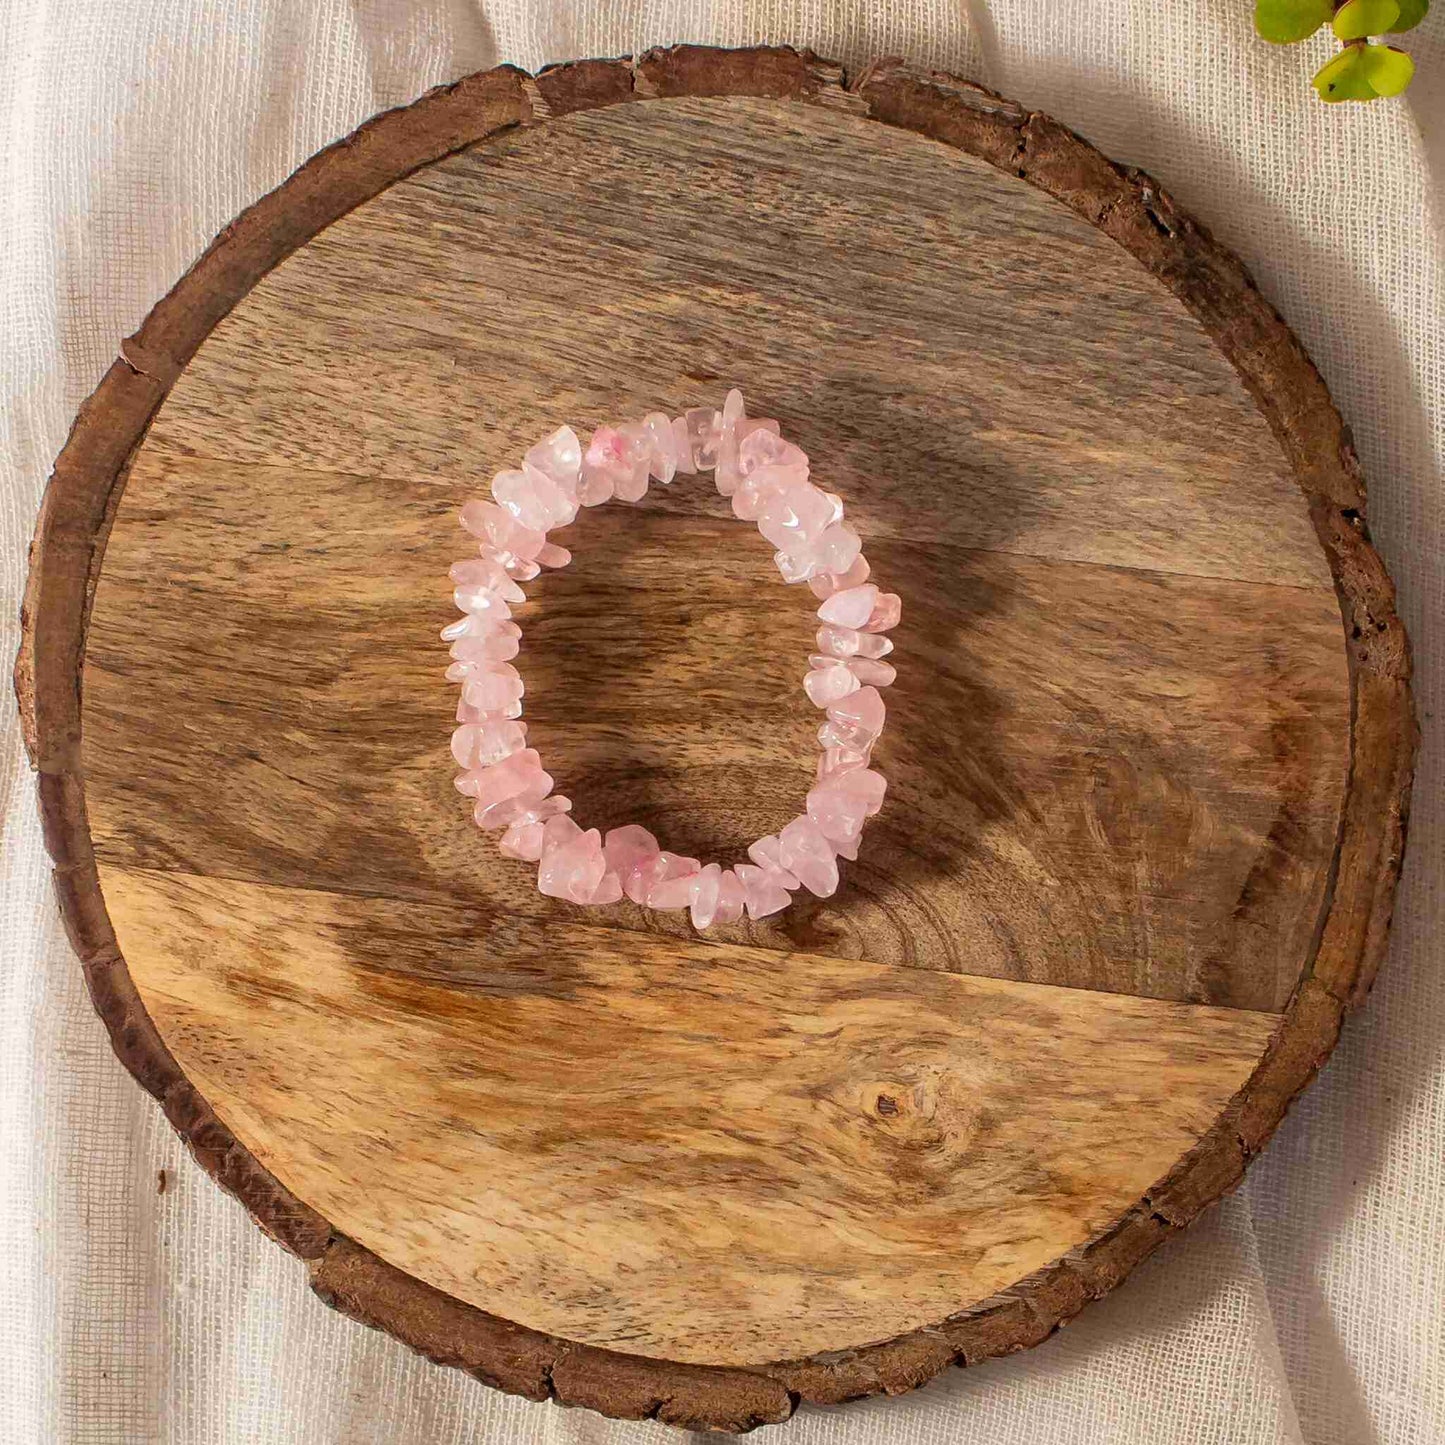 buy handmade rose quartz bracelet